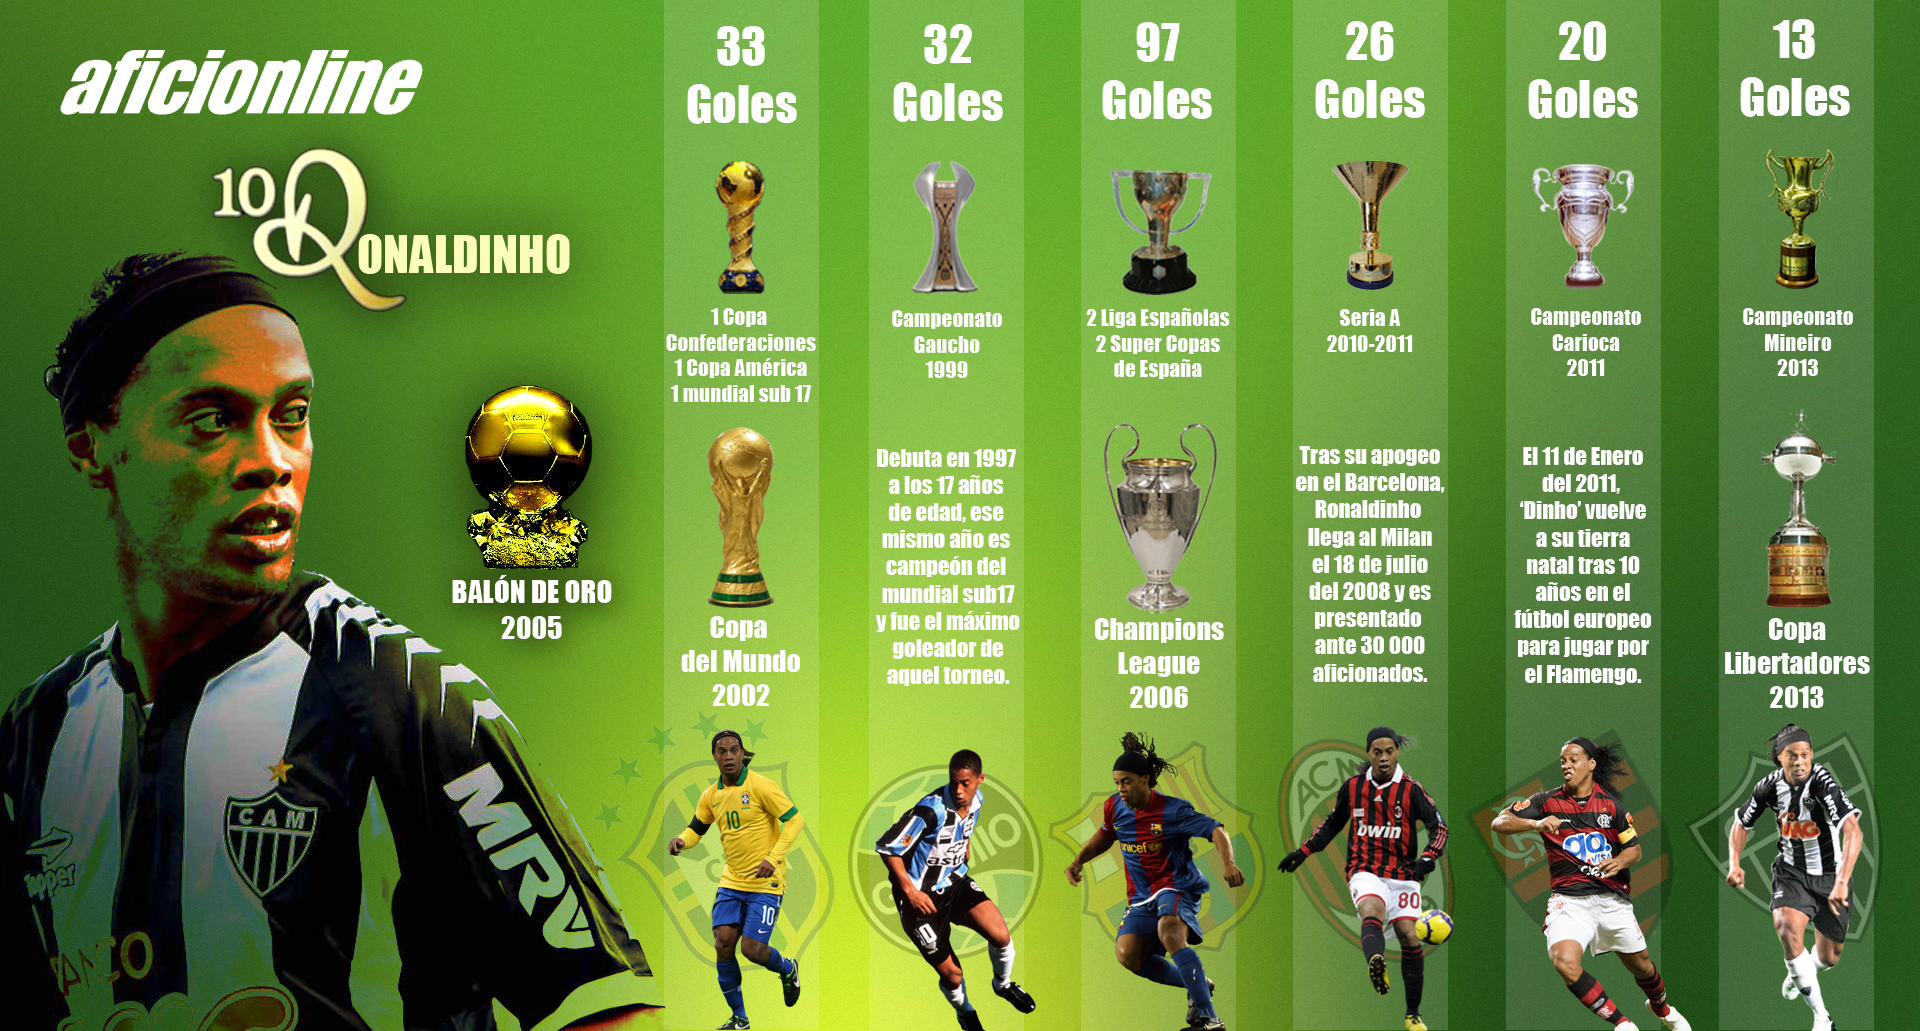 ‘Dinho’ ha ganado más de 30 títulos como profesional. (Infografía: Criss Lobo)